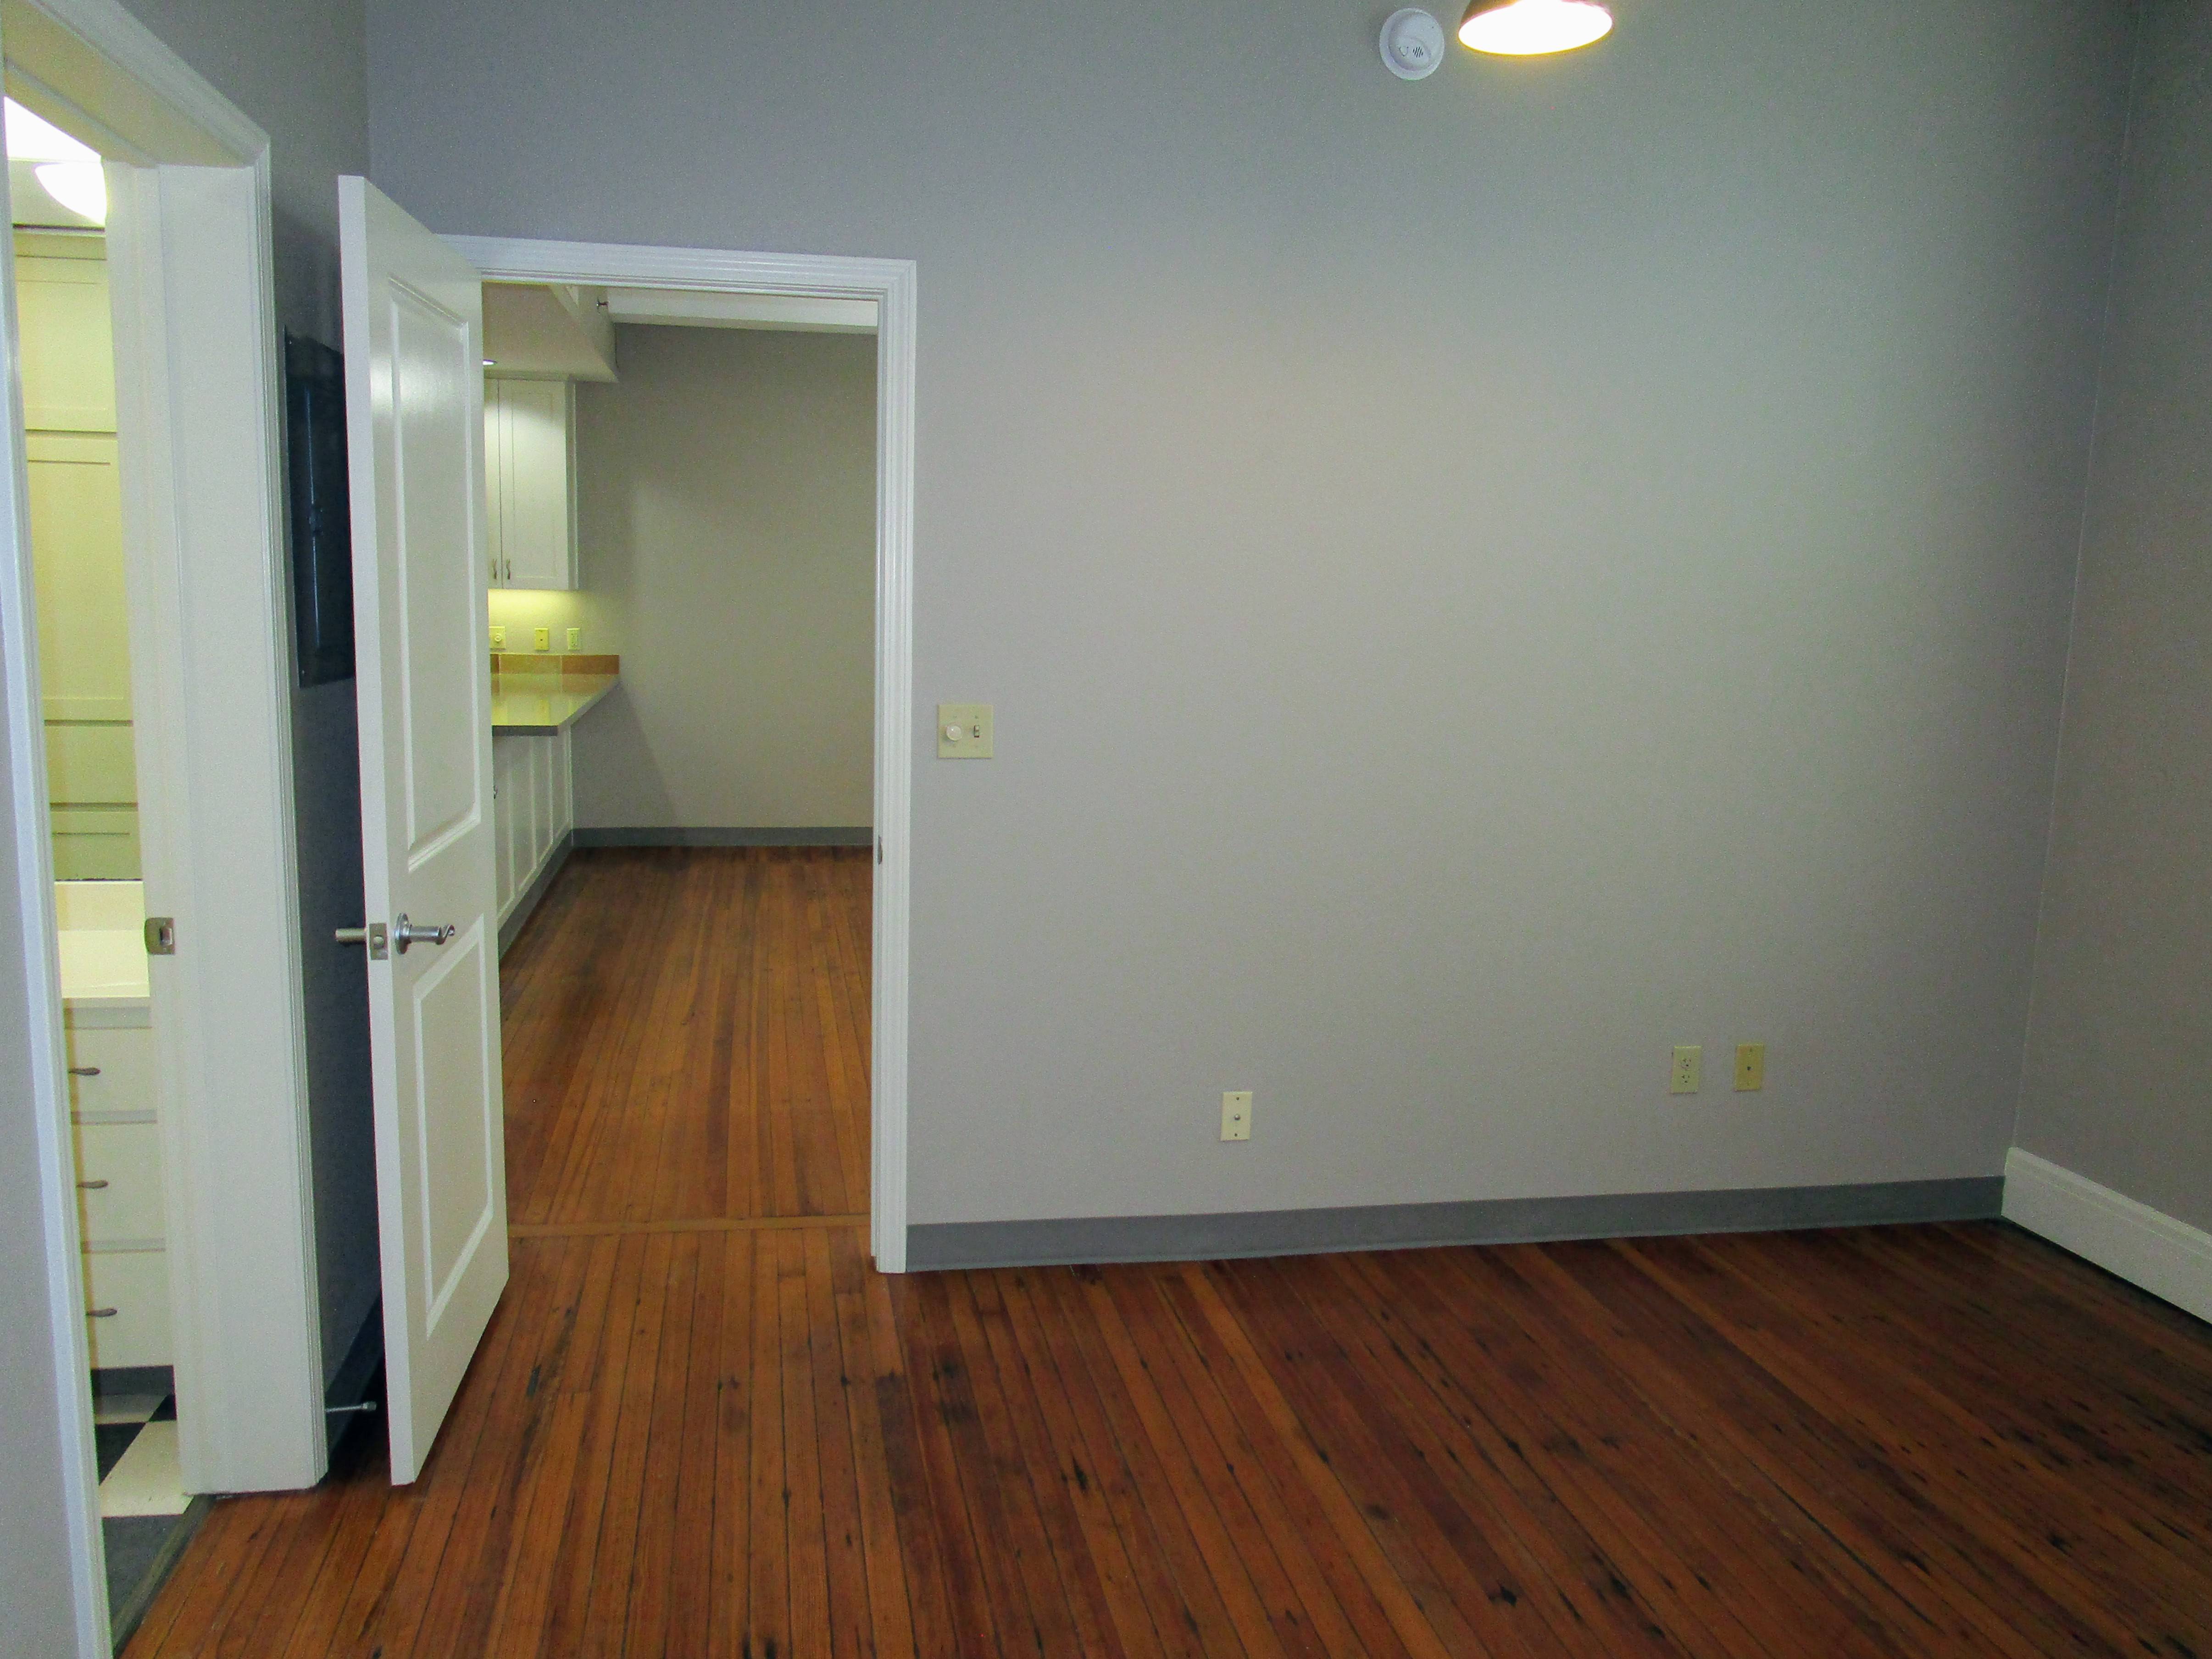 Apartment Home #530, Floor Plan E